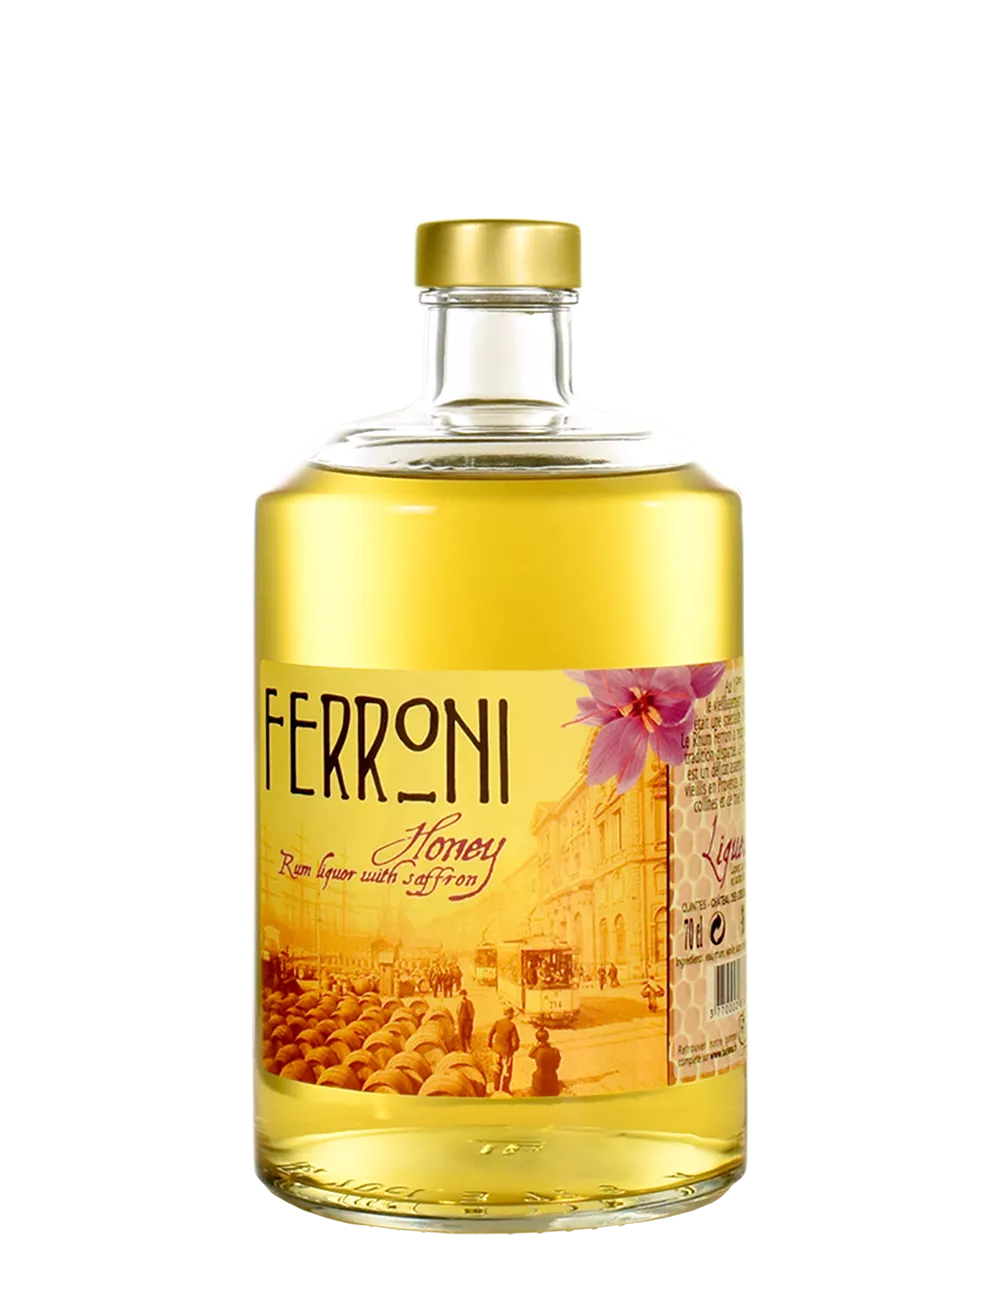 Ferroni - Honey - Rhum épicé